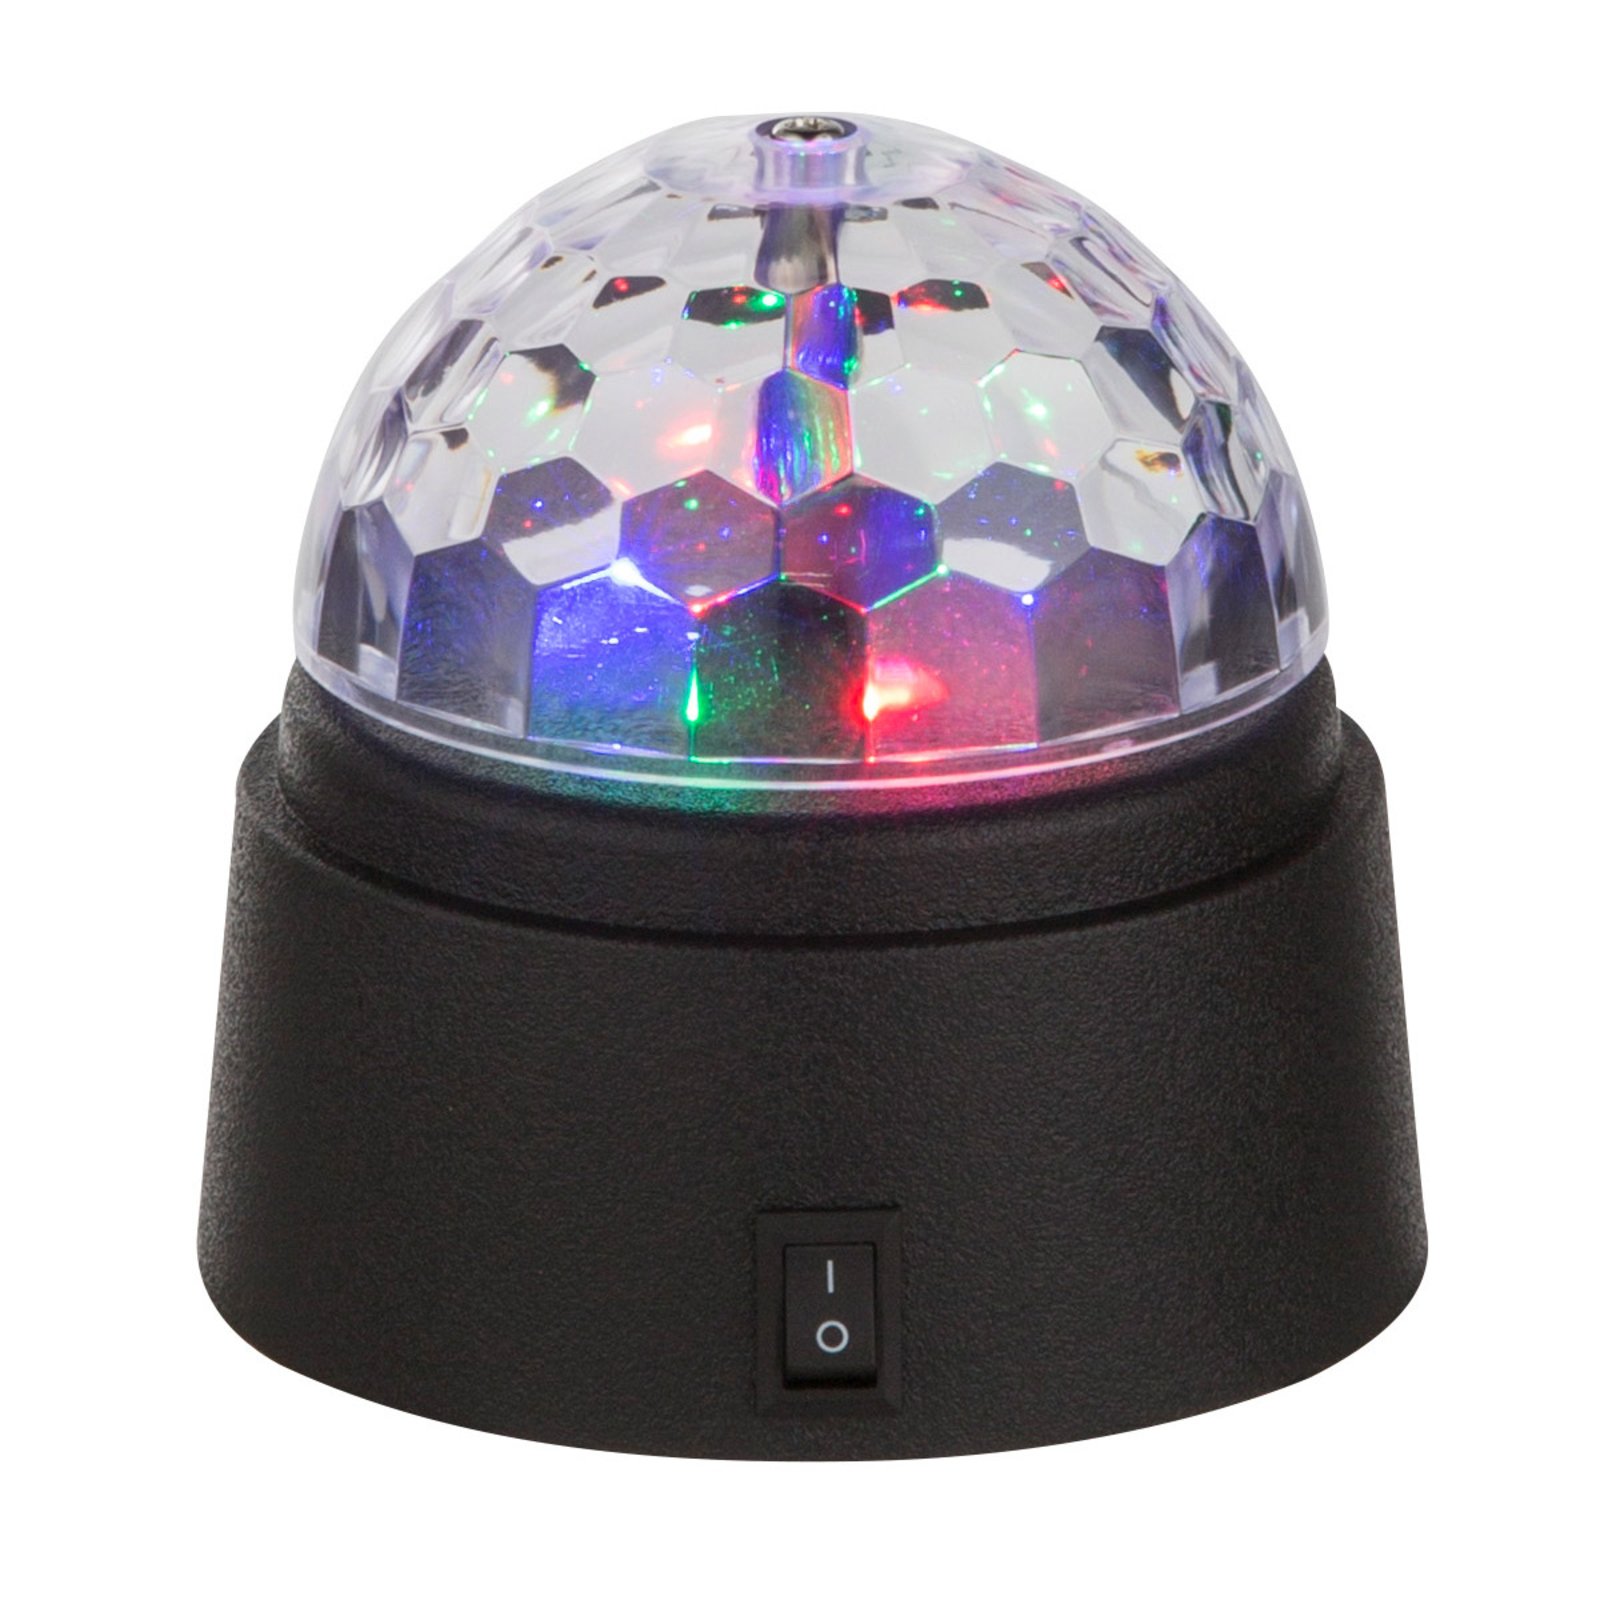 LED-borddekolampe Disco med fargerikt lys